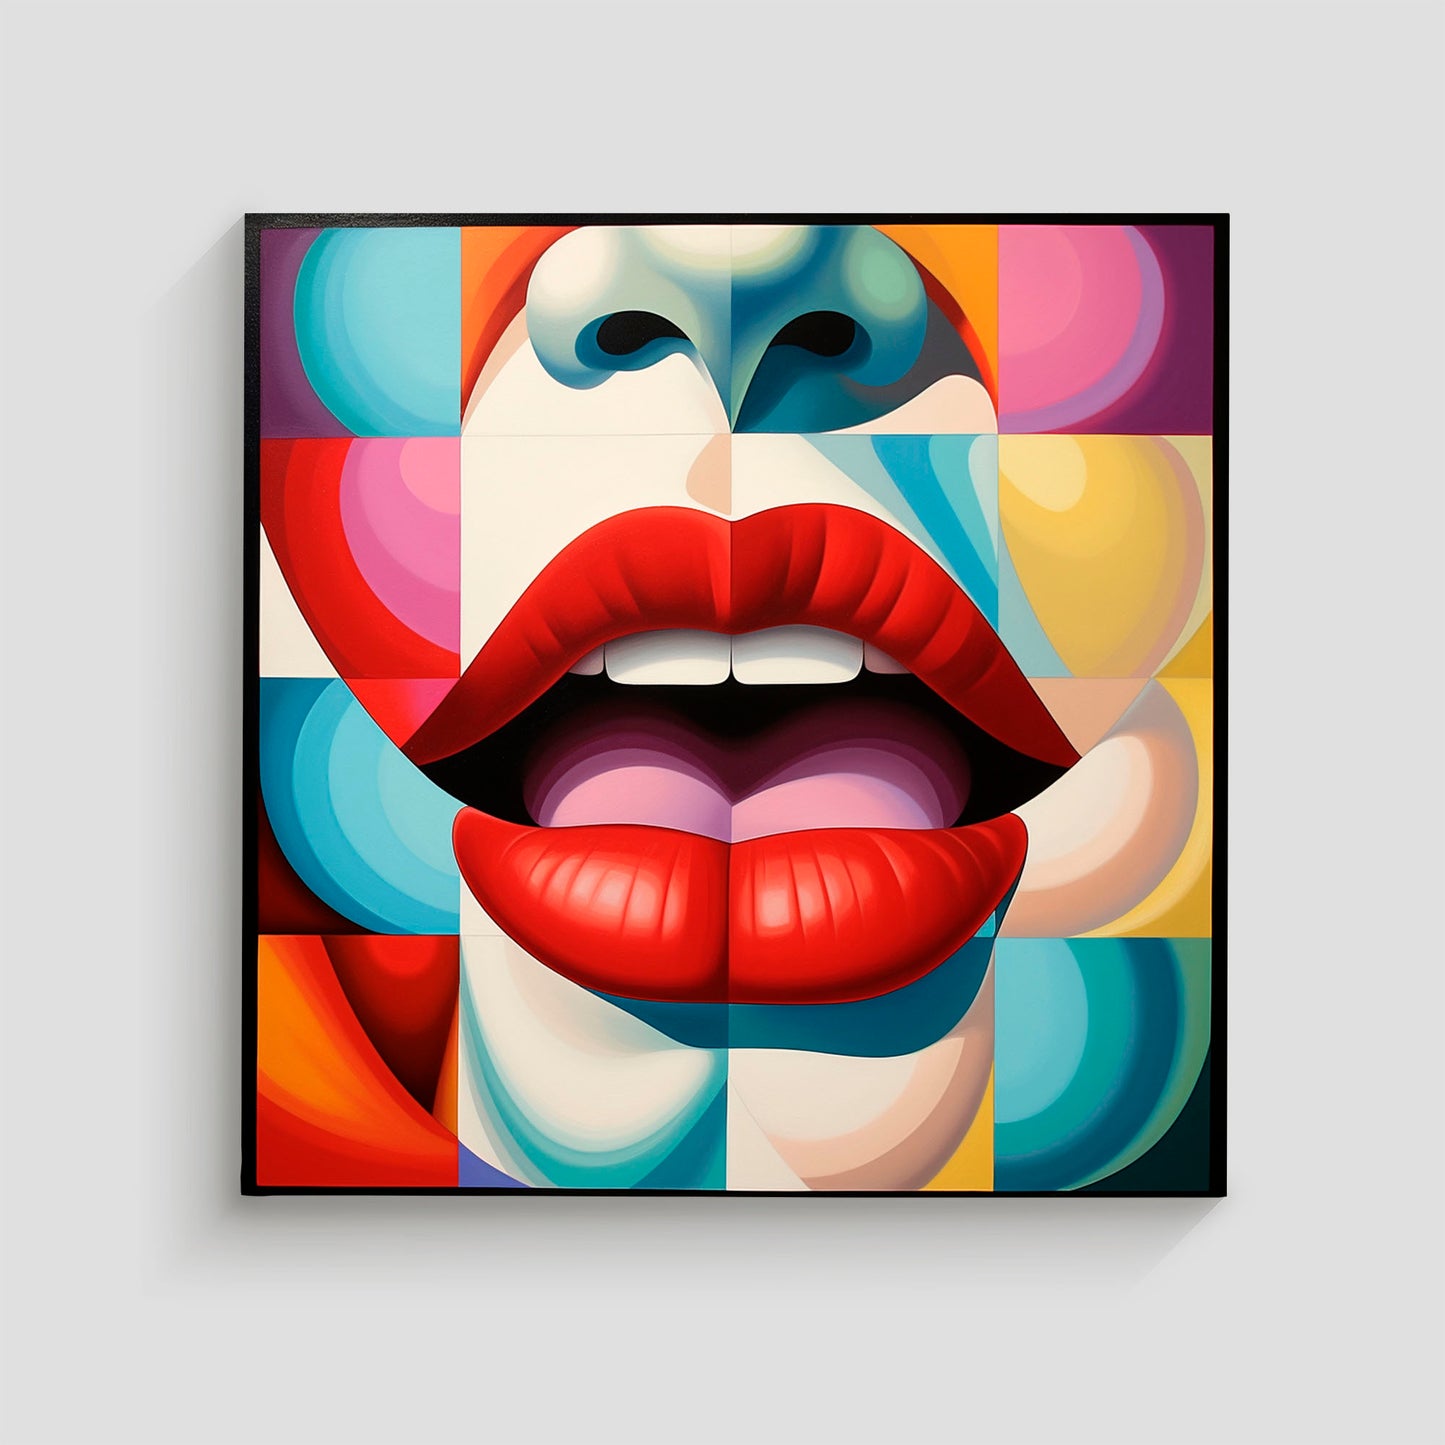 Imagen de arte pop que muestra unos labios rojos abiertos sobre un fondo geométrico colorido, con formas y patrones vibrantes en tonos variados, destacando la nariz y parte del rostro en un estilo abstracto.